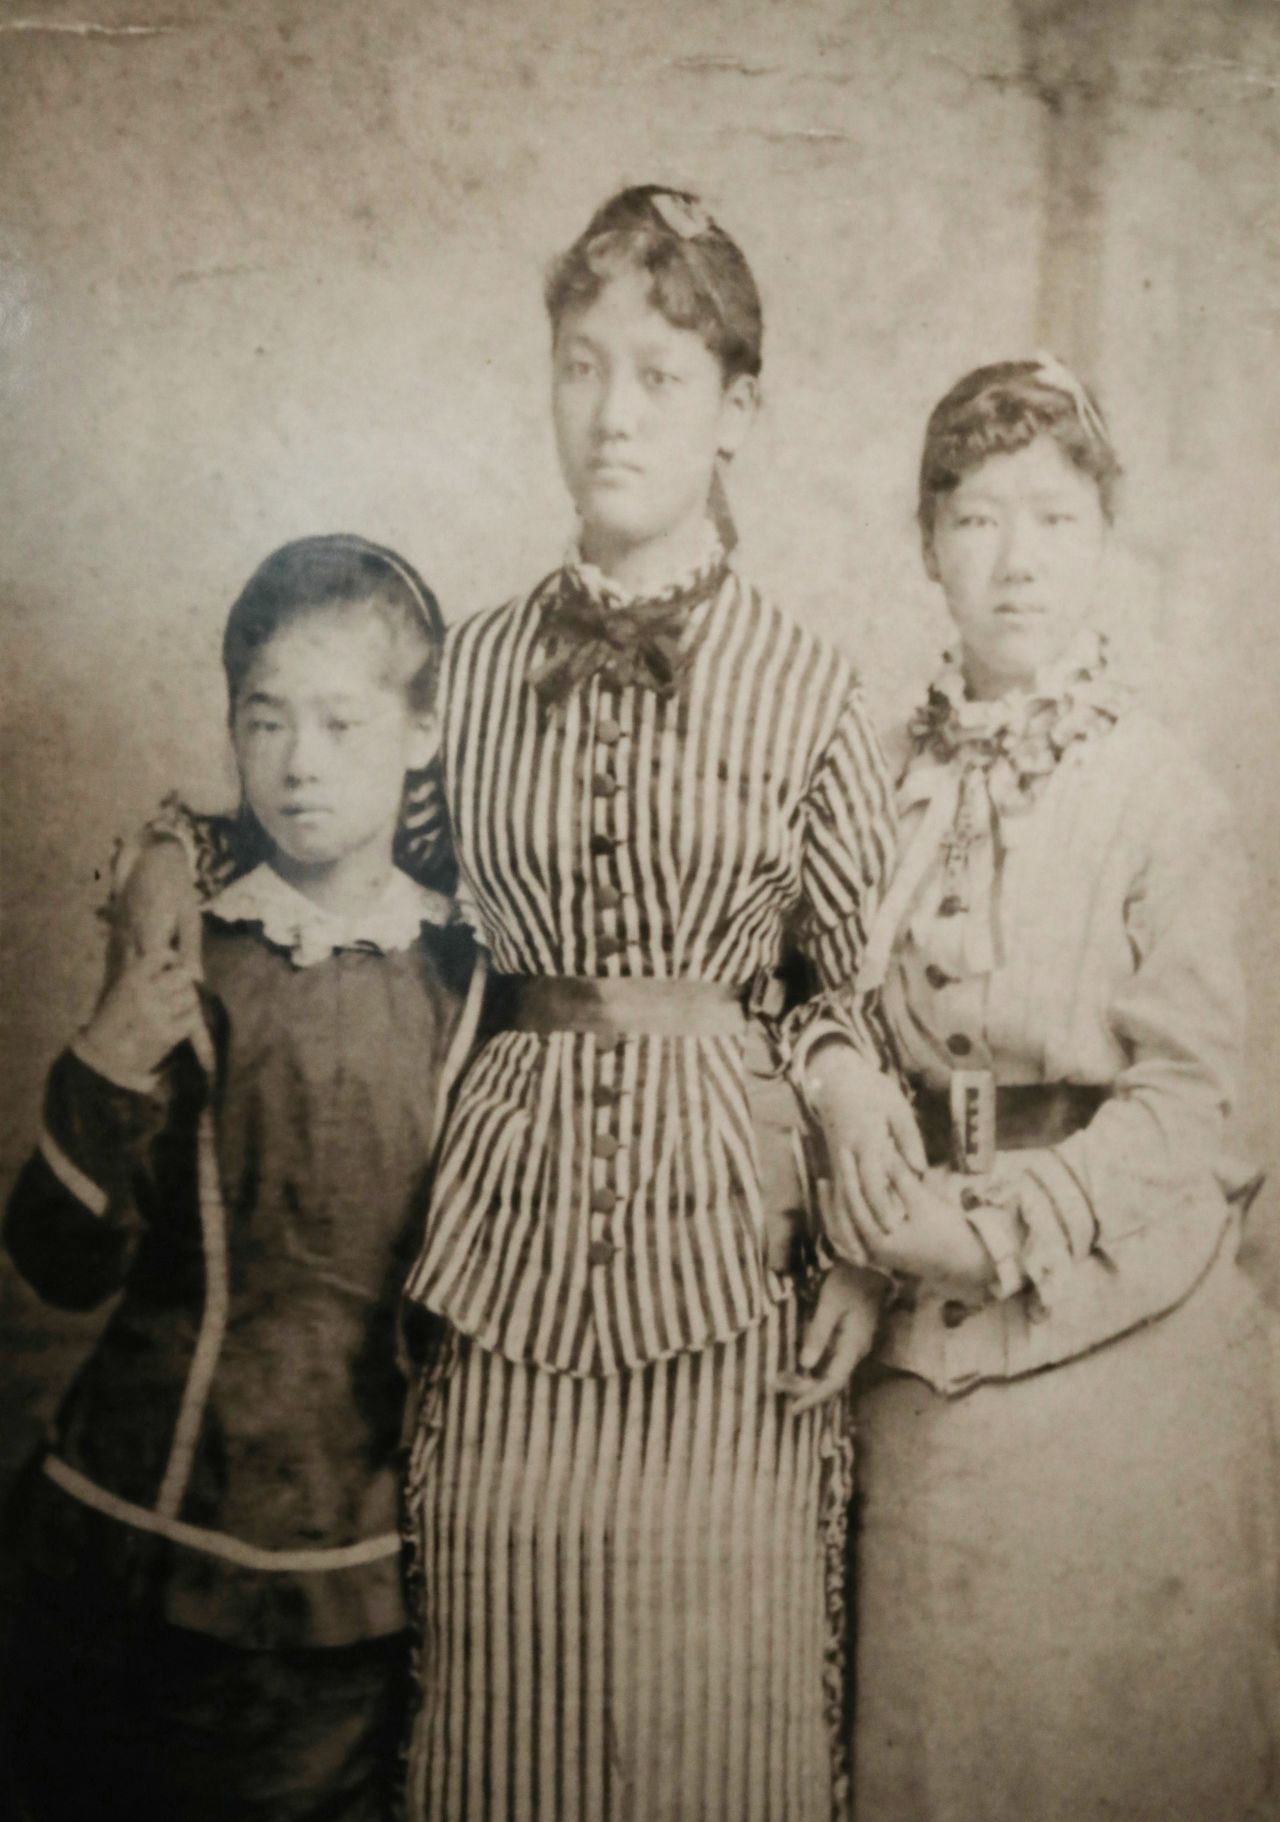 وفد الطالبات اليابانيات، الصورة ملتقطة في المعرض المئوي في فيلادلفيا عام 1876. من اليسار إلى اليمين: تسودا أوميكو، ياماكاوا سوتيماتسو، ناغاي شيغيكو (الصورة بإذن من جامعة تسودا، الحقوق لجيجي برس).